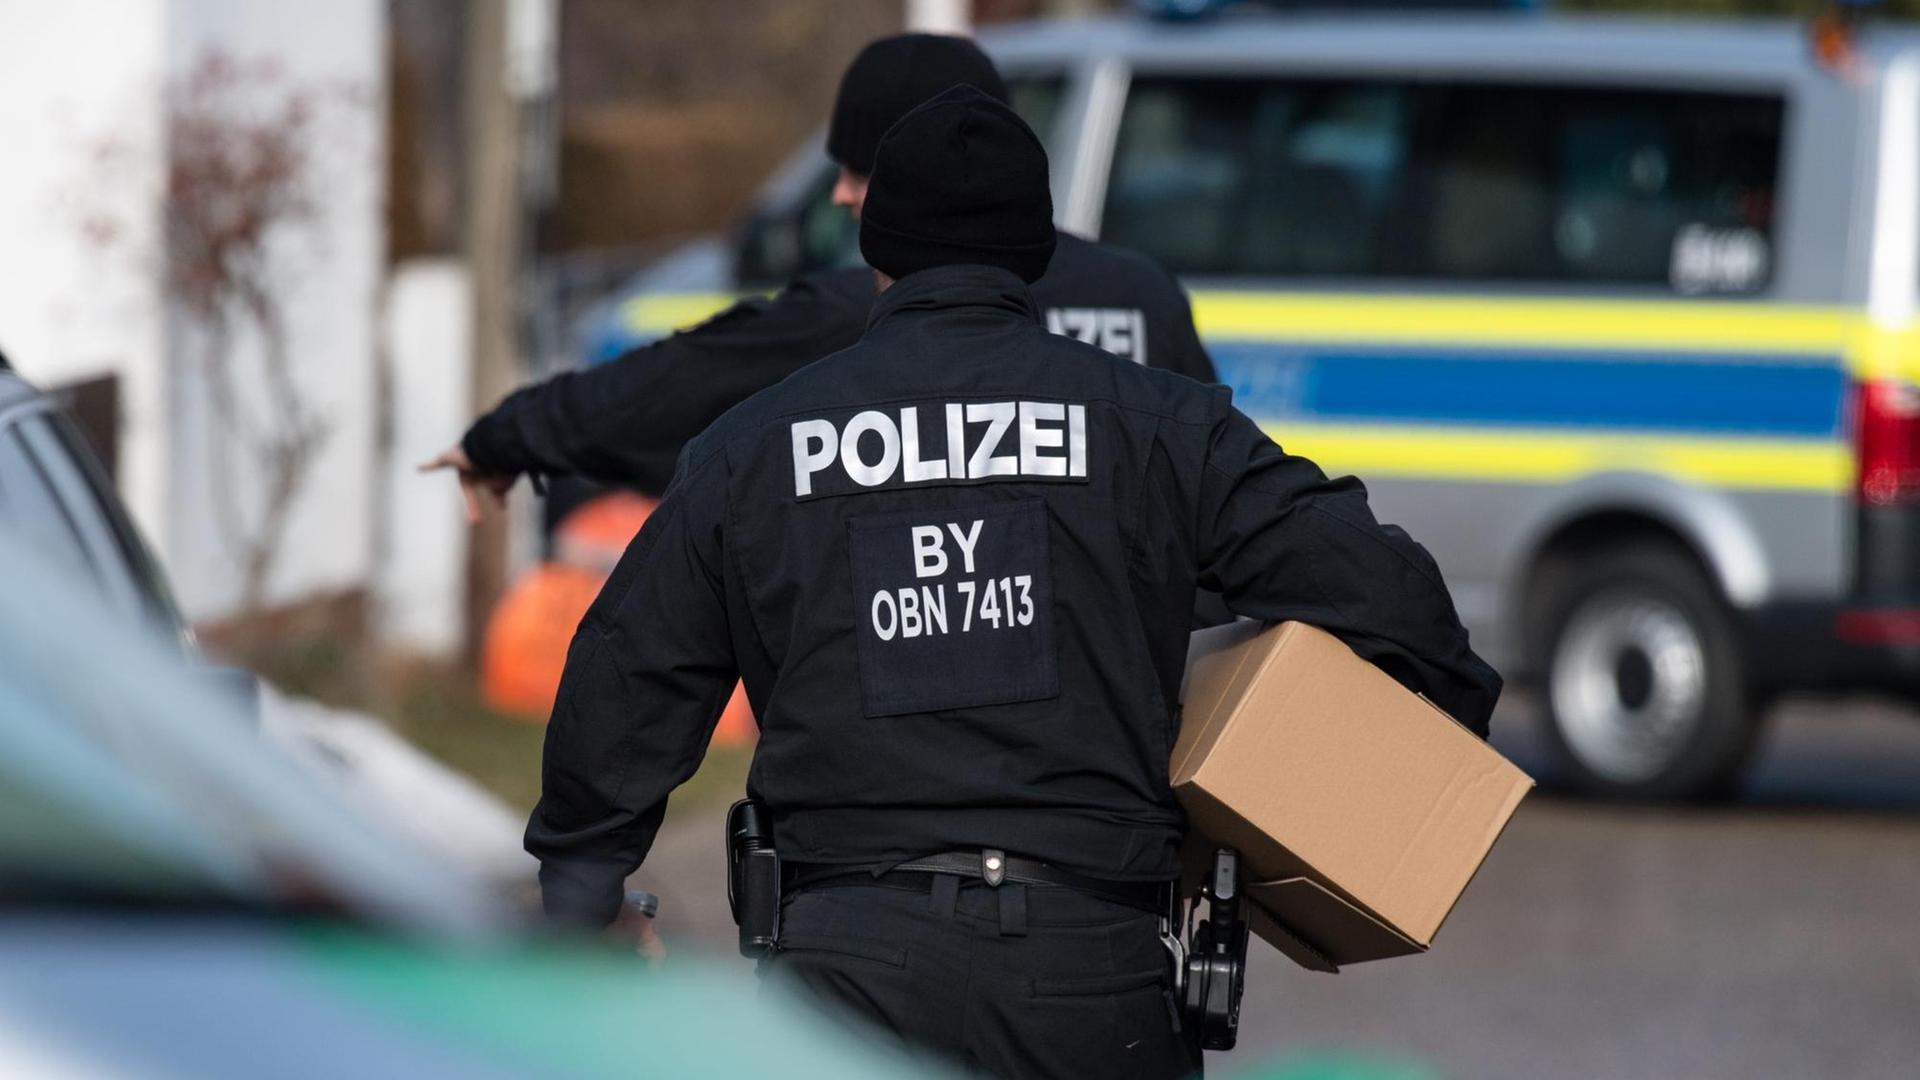 Polizisten tragen am 07.02.2017 Kartons vor einem Wohnhaus in Pliening (Bayern). In dem Haus hat zuvor ein SEK-Einsatz gegen einen Reichsbürger stattgefunden.